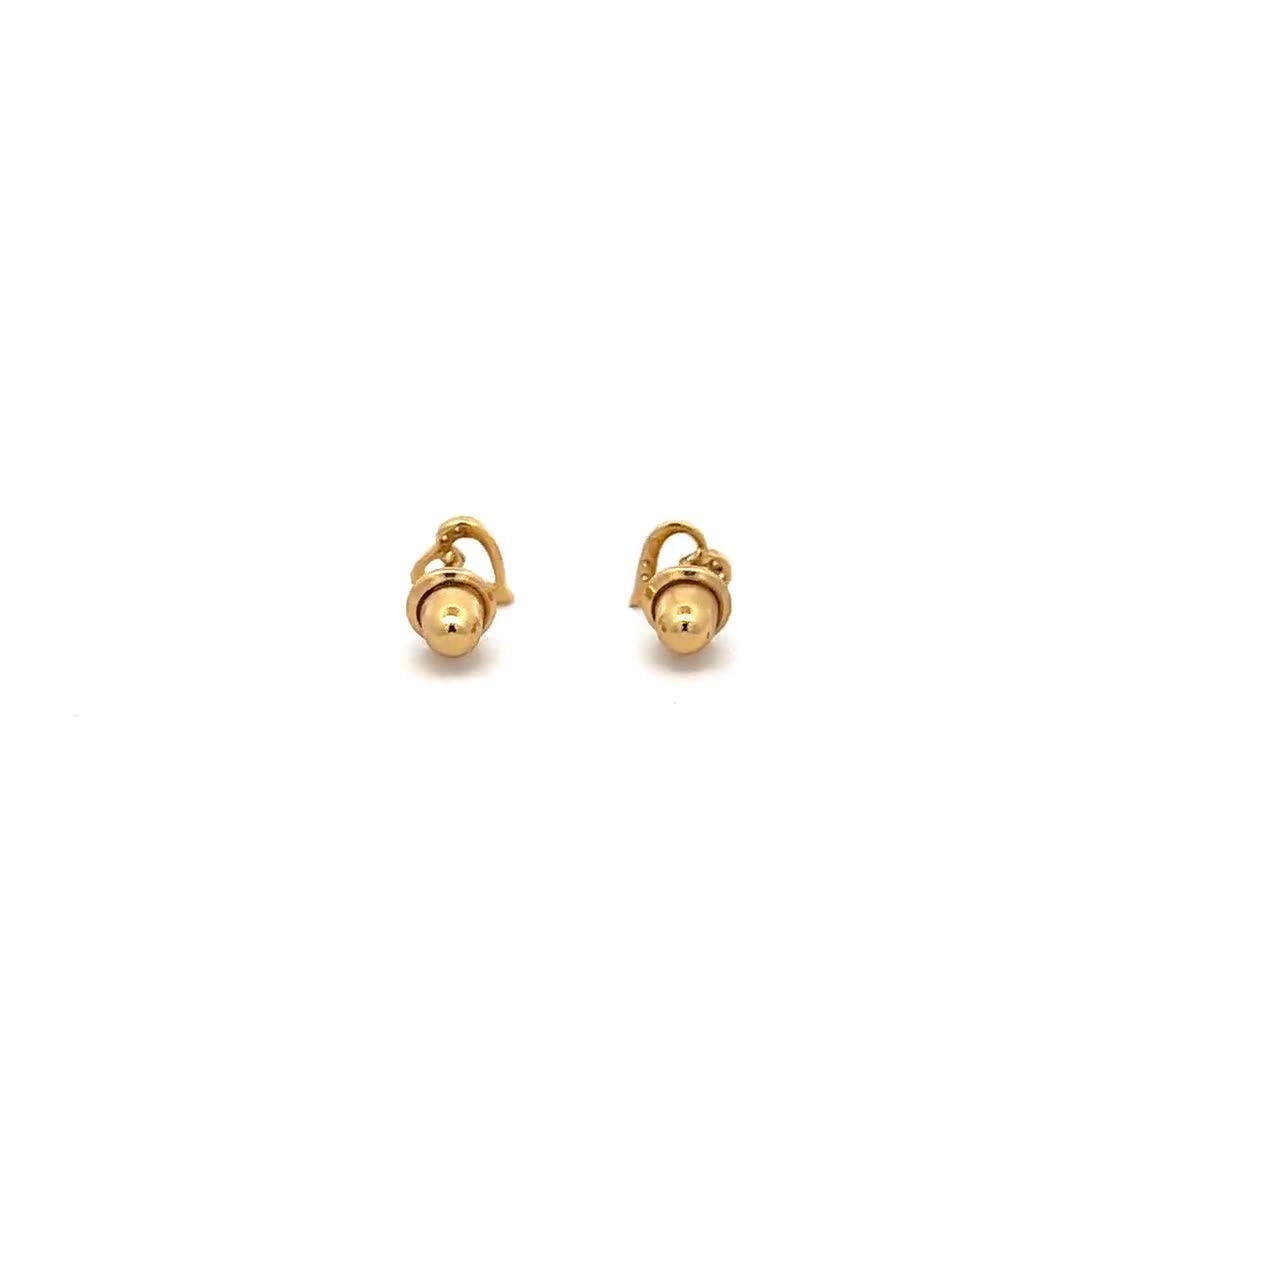 14K Gold Heart Lock Kids / Children's / Girls Safety Screw Back Earrings at in Season Jewelry